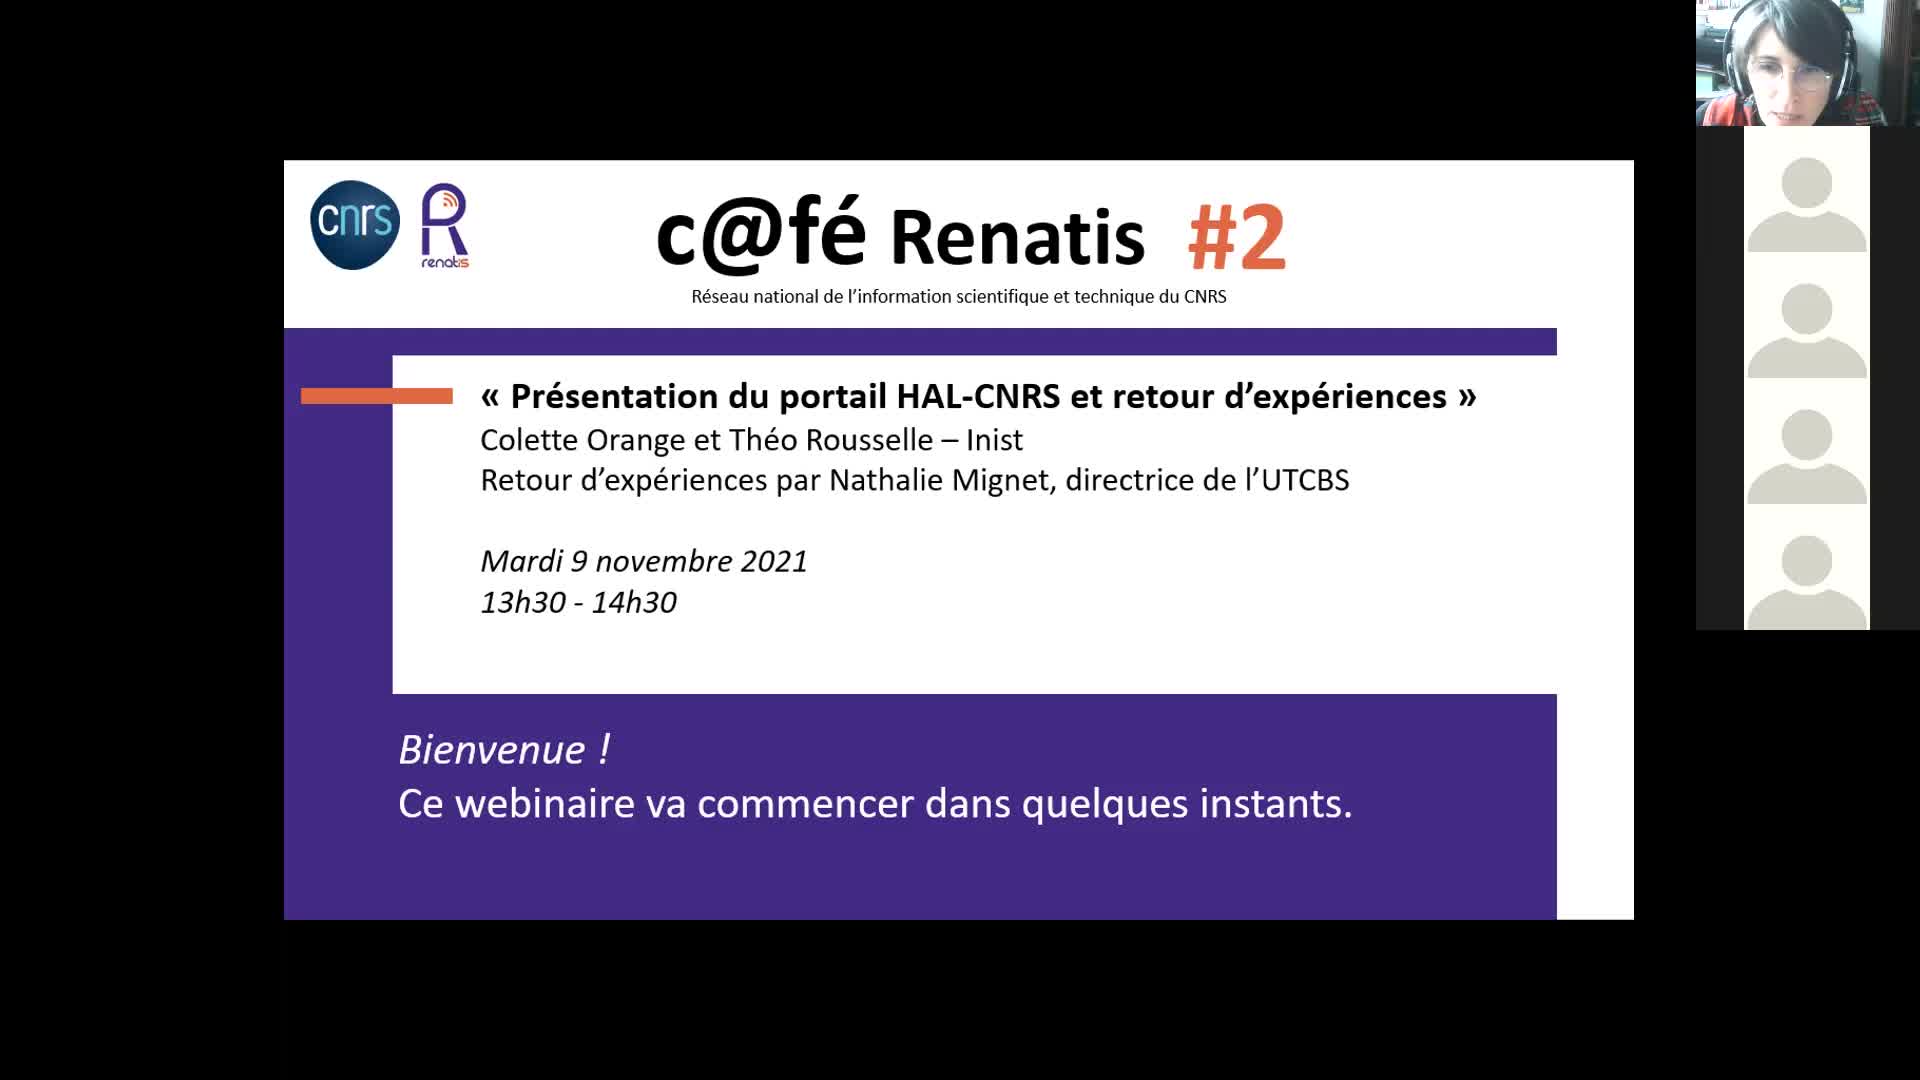 C@fés Renatis - Retours d'expérience du portail HAL Cnrs